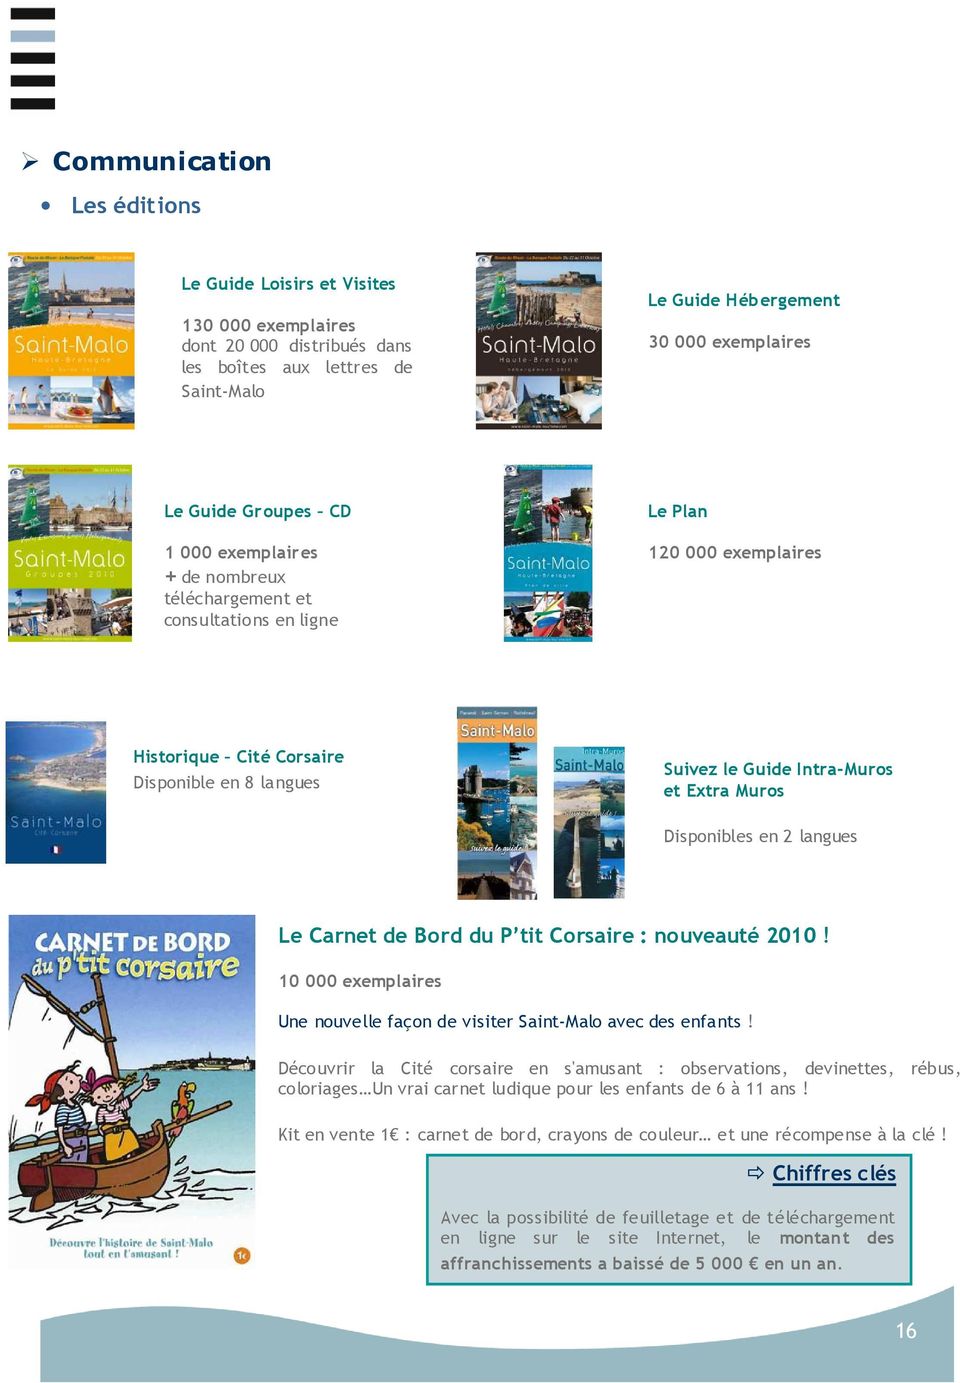 Disponibles en 2 langues Le Carnet de Bord du P tit Corsaire : nouveauté 2010! 10 000 exemplaires Une nouvelle façon de visiter Saint-Malo avec des enfants!